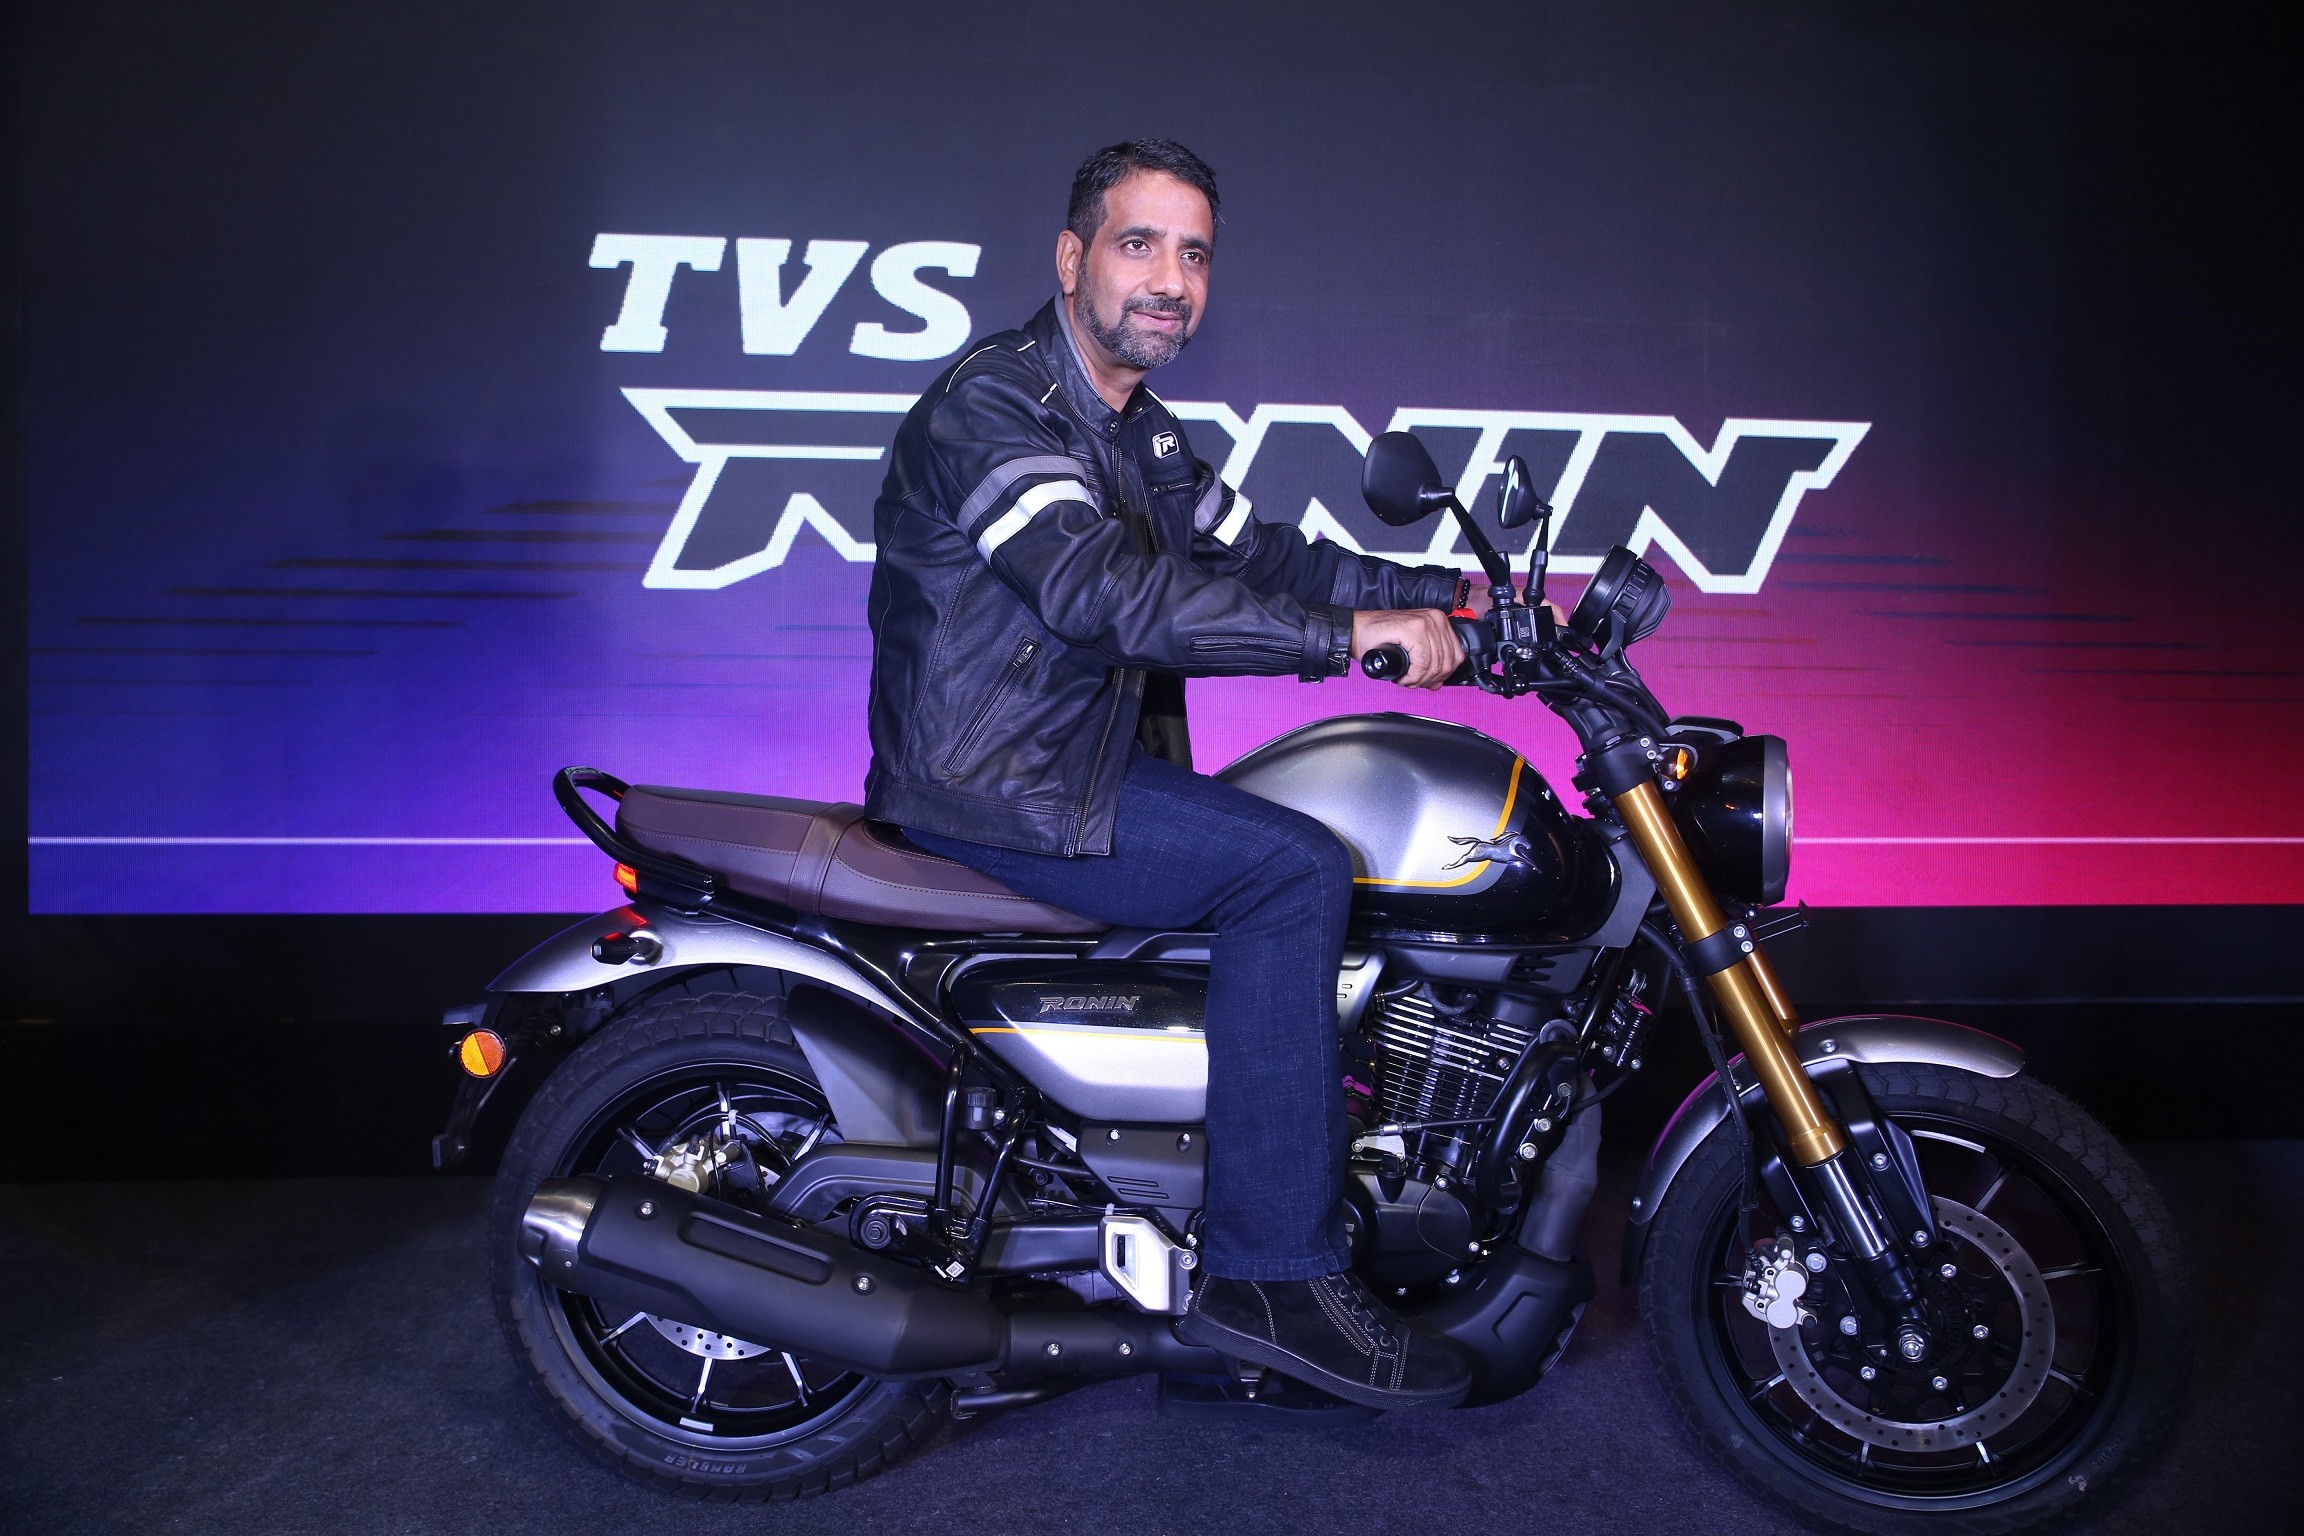 टीवीएस मोटर कंपनी ने जयपुर में लॉन्च की नई टीवीएस रोनिन